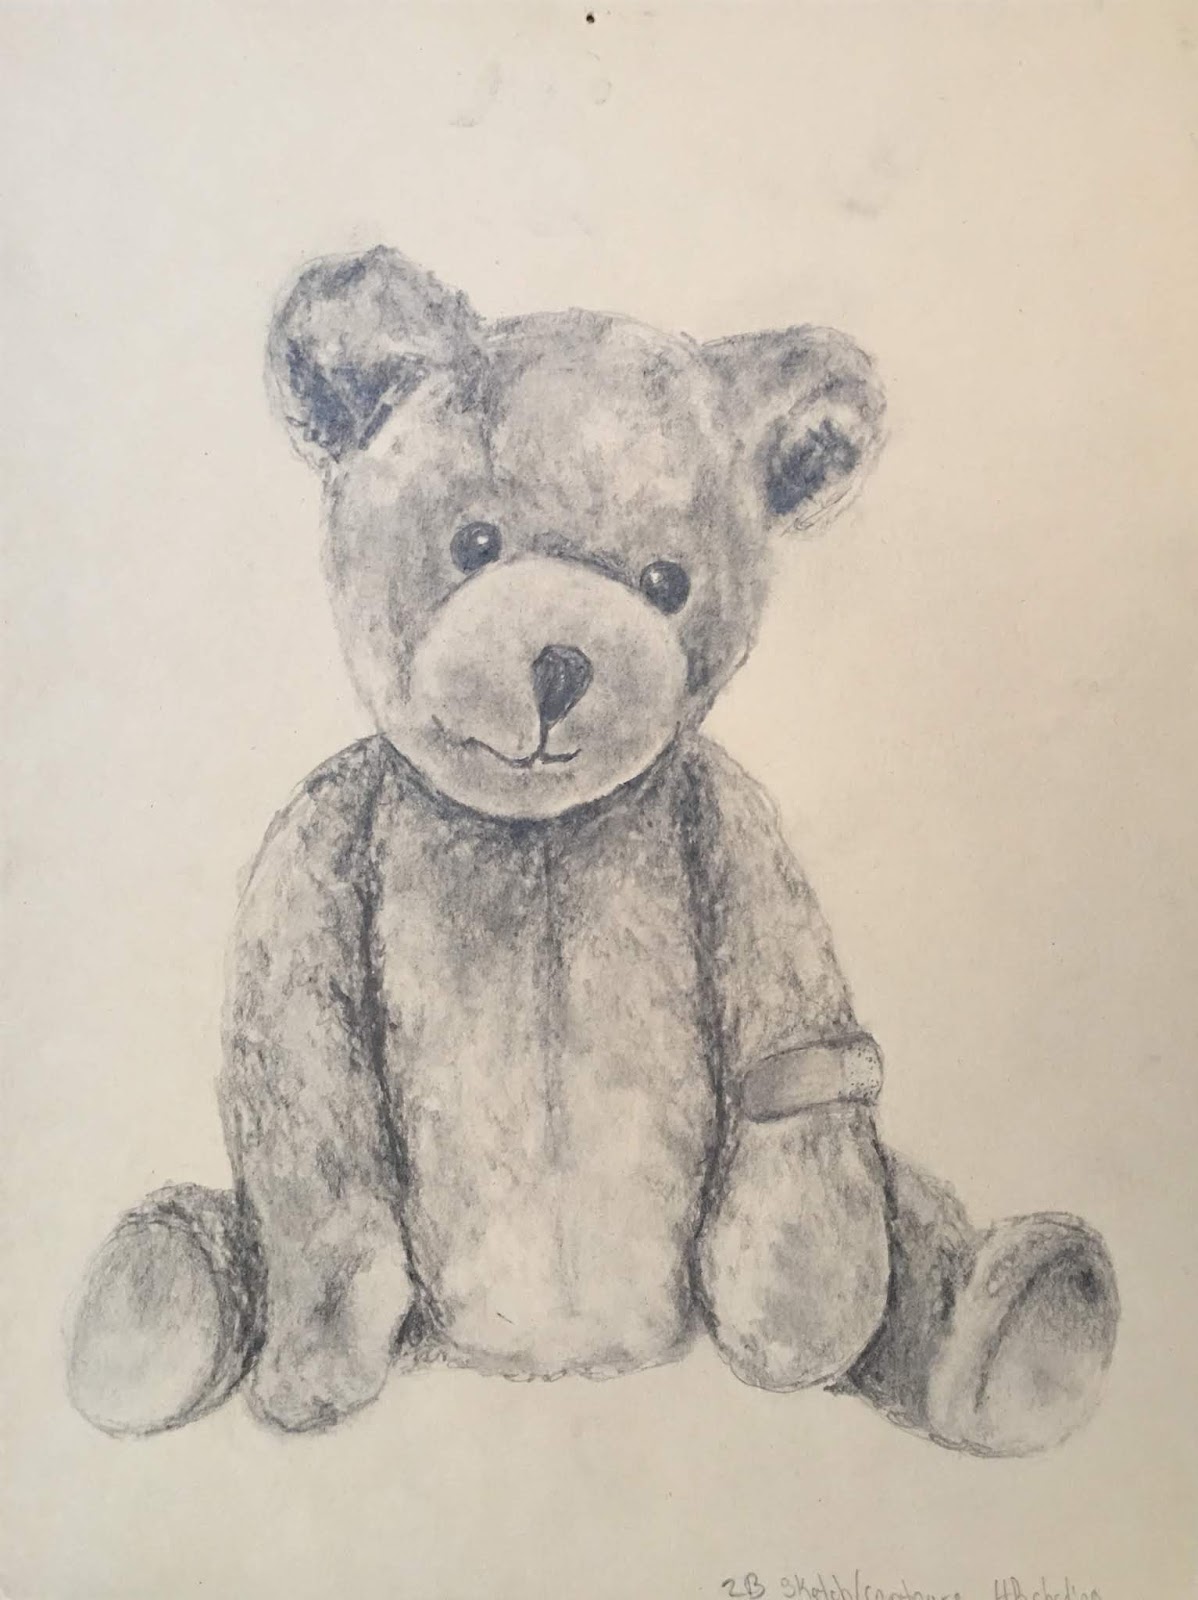 Sketch of an old, sad teddy bear on Craiyon